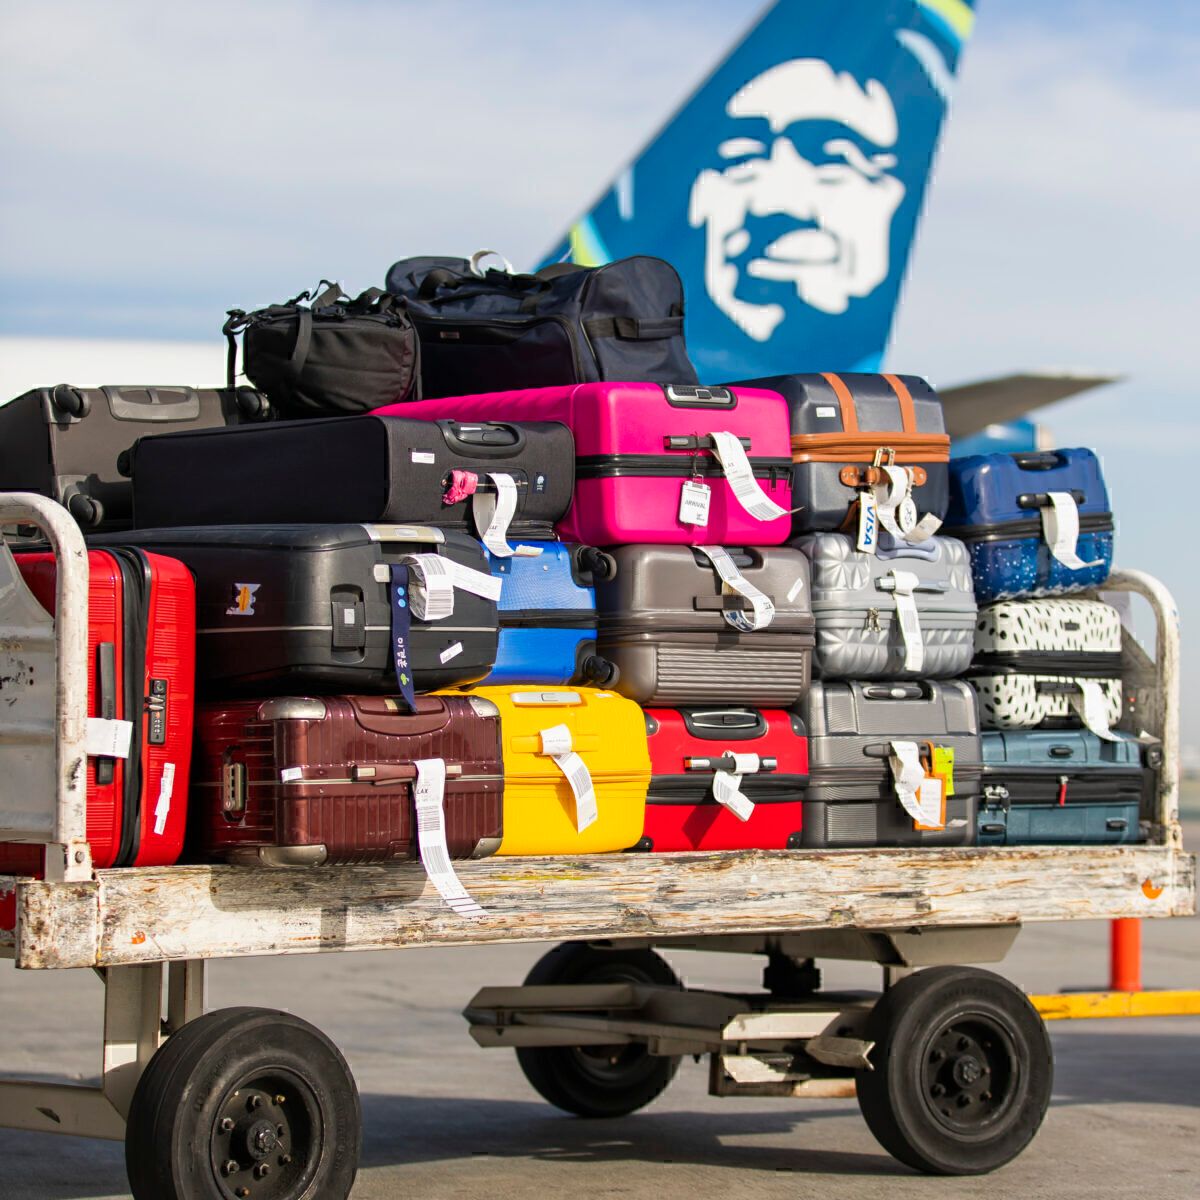 Alaska Airlines luggage